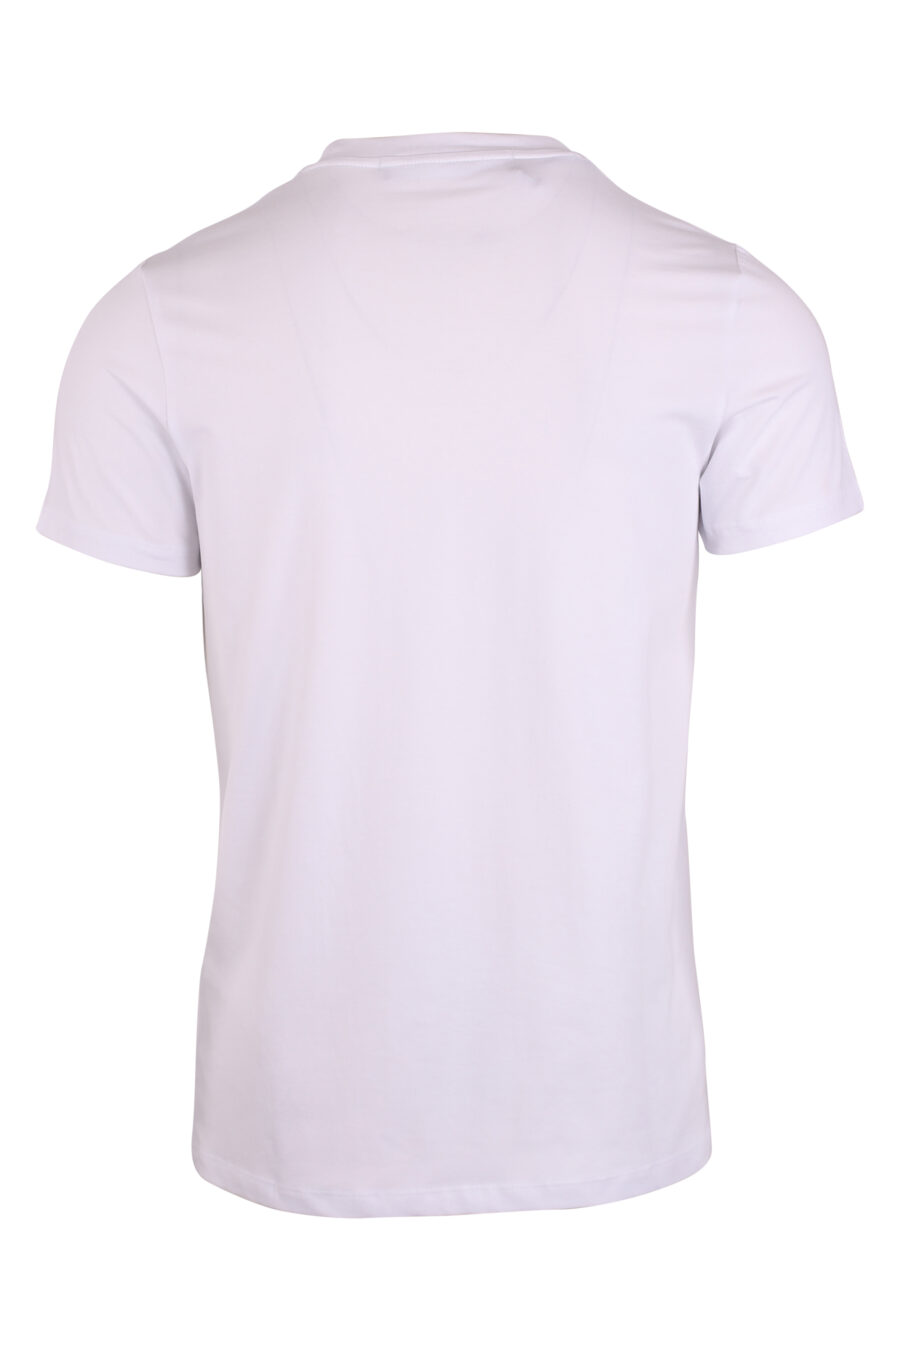 T-shirt branca com bolso com fecho de correr e logótipo branco - IMG 9474